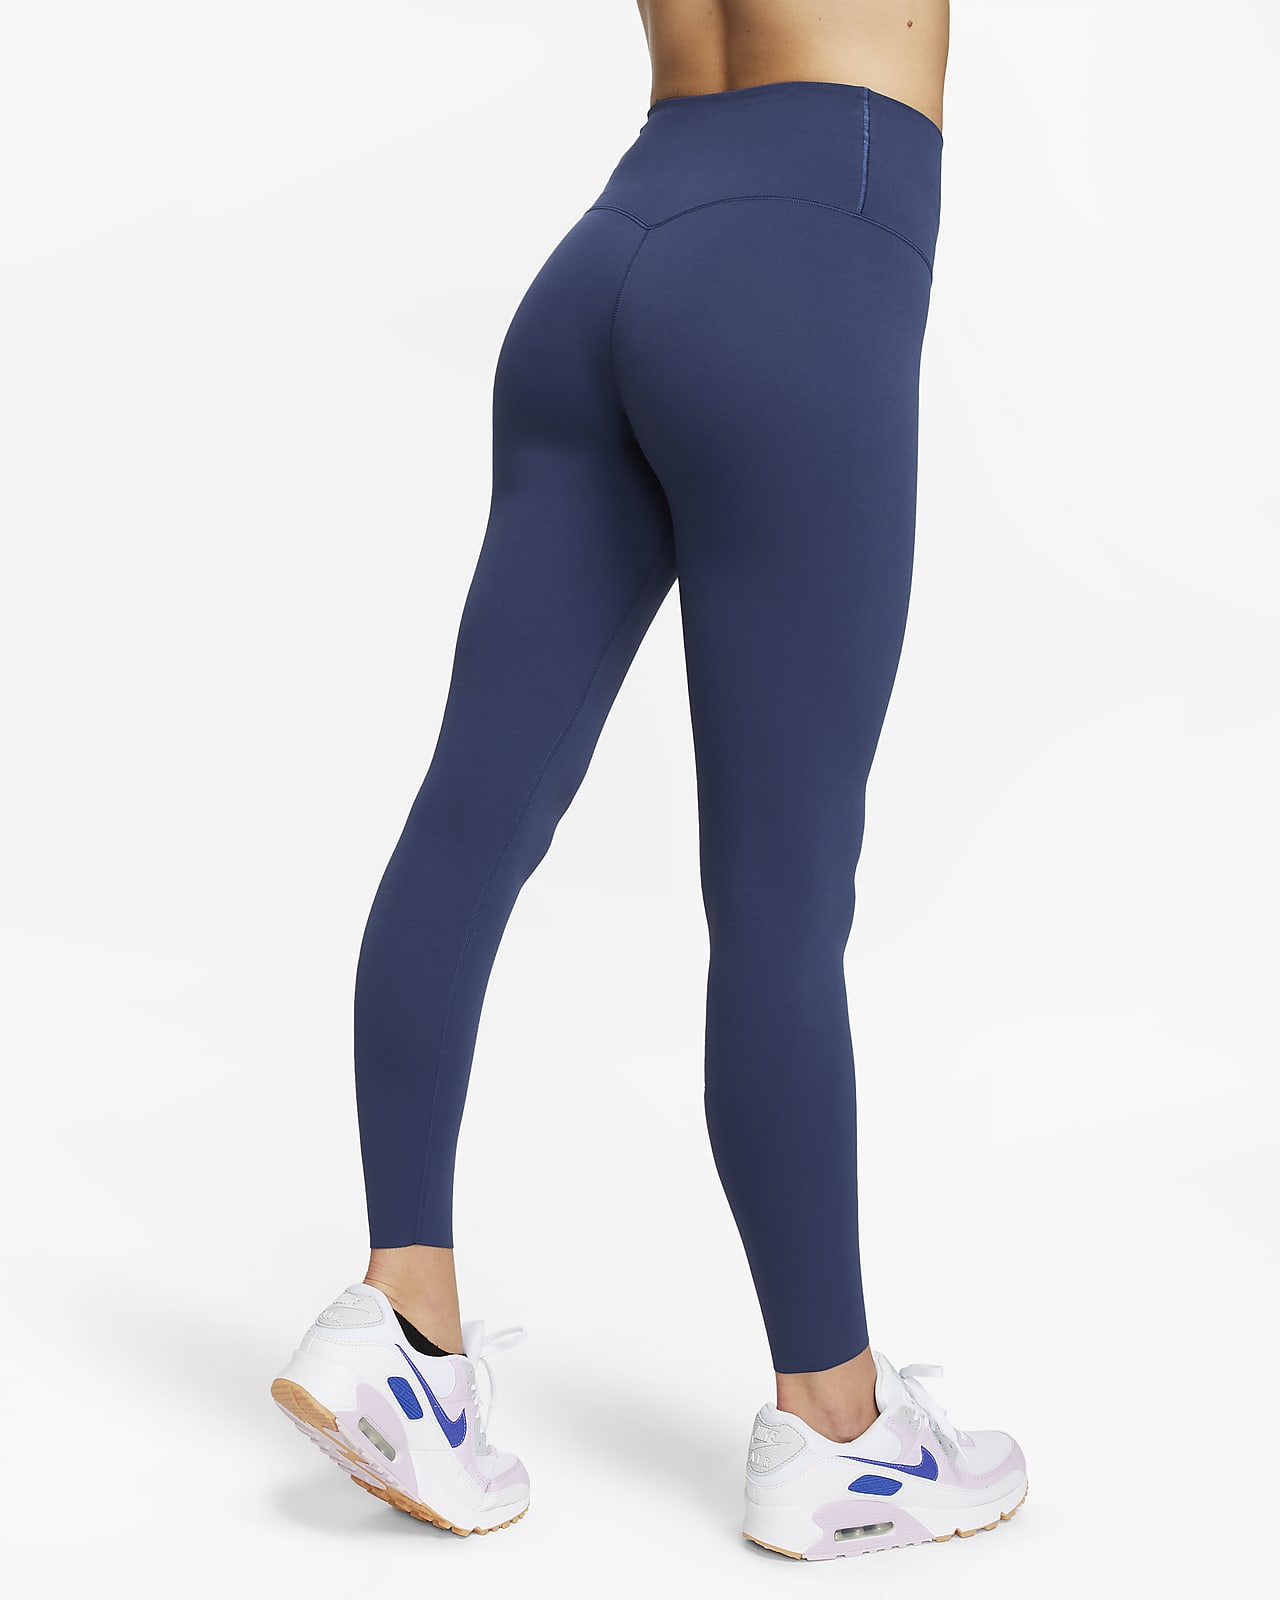 Nike Zenvy Women's Gentle-Support High-Waisted Full-Length Leggings